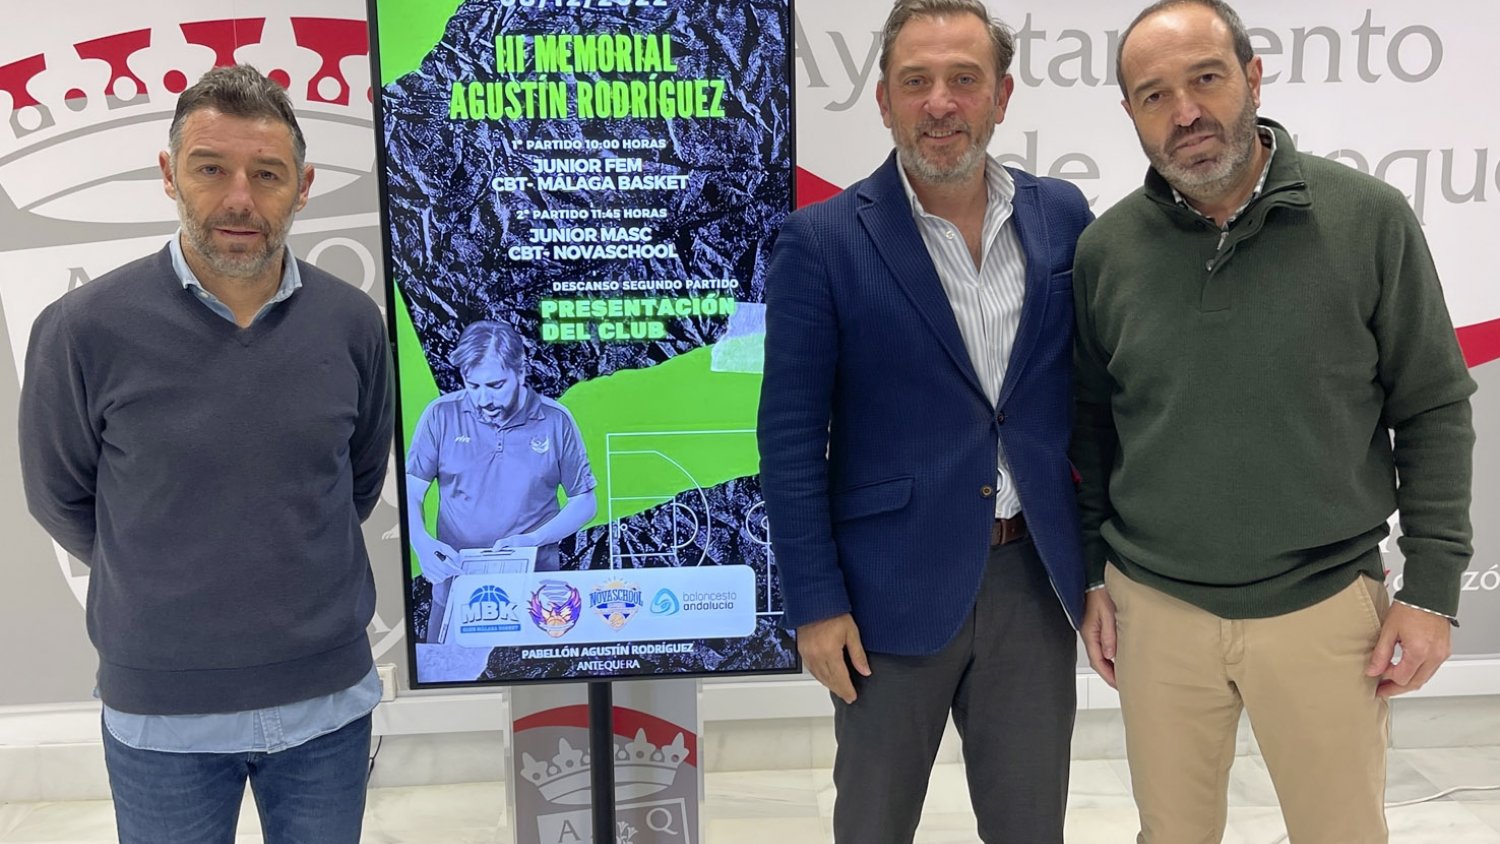 El Club Baloncesto Torcal homenajea a Agustín Rodríguez en la tercera edición del memorial